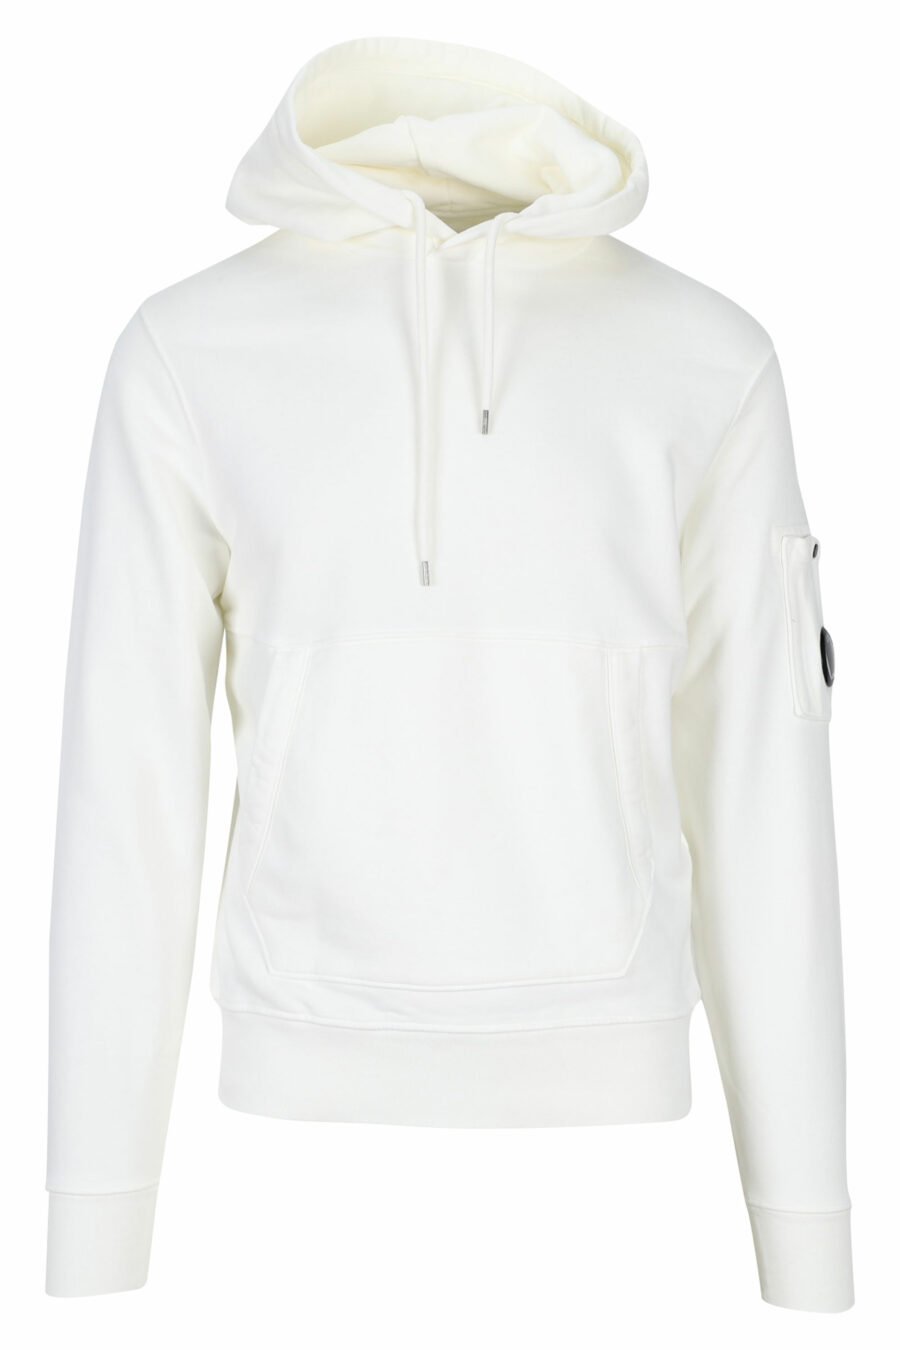 C.P. Company - Sweat à capuche blanc avec logo latéral - BLS Fashion